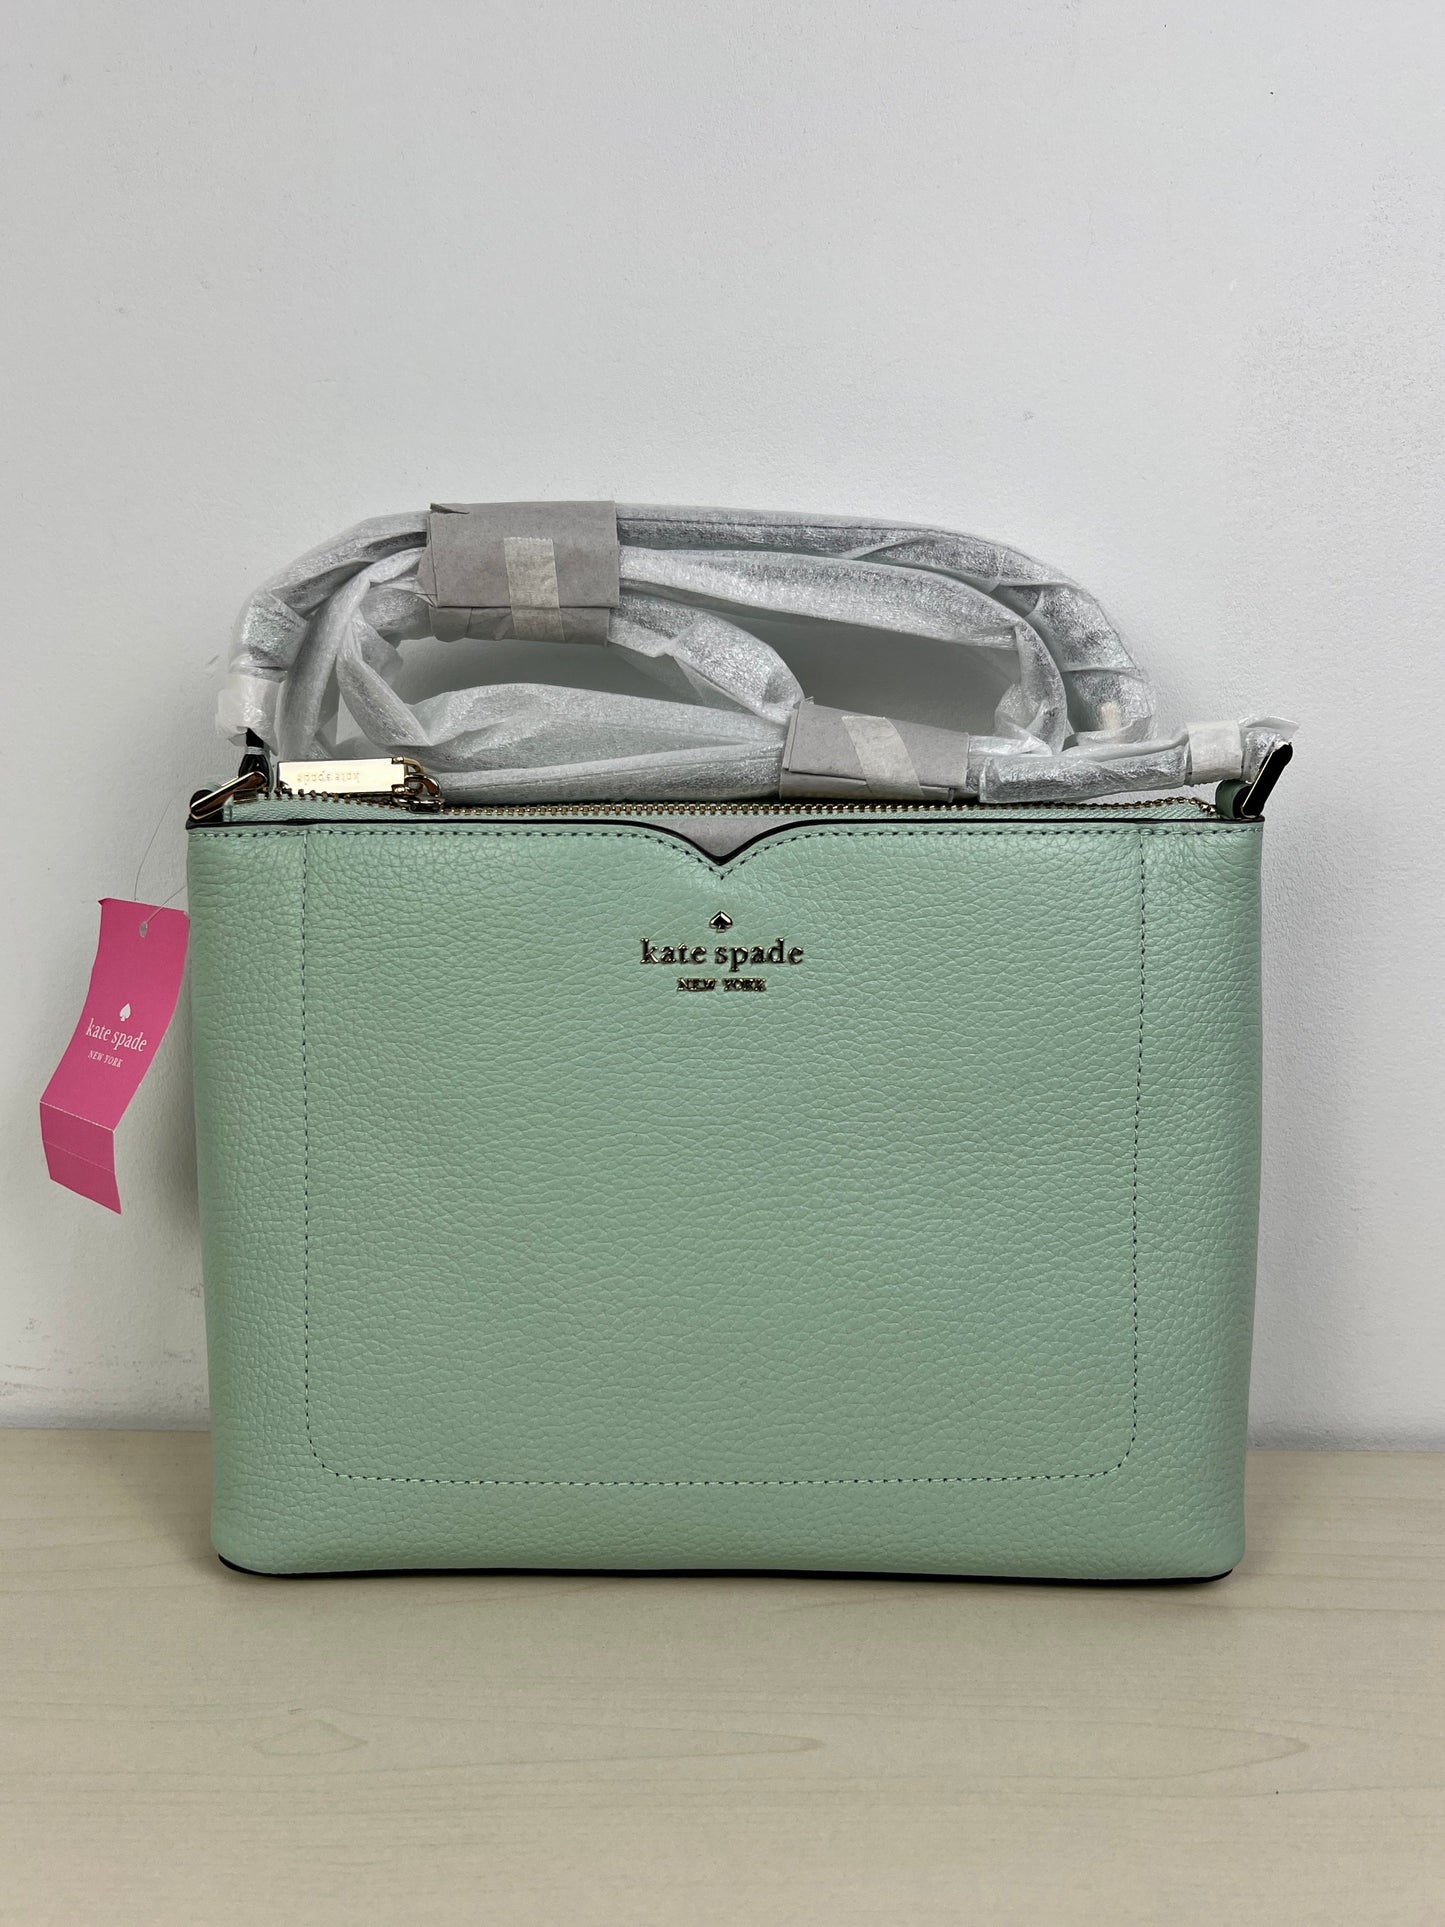 Handbag Kate Spade, Size Medium